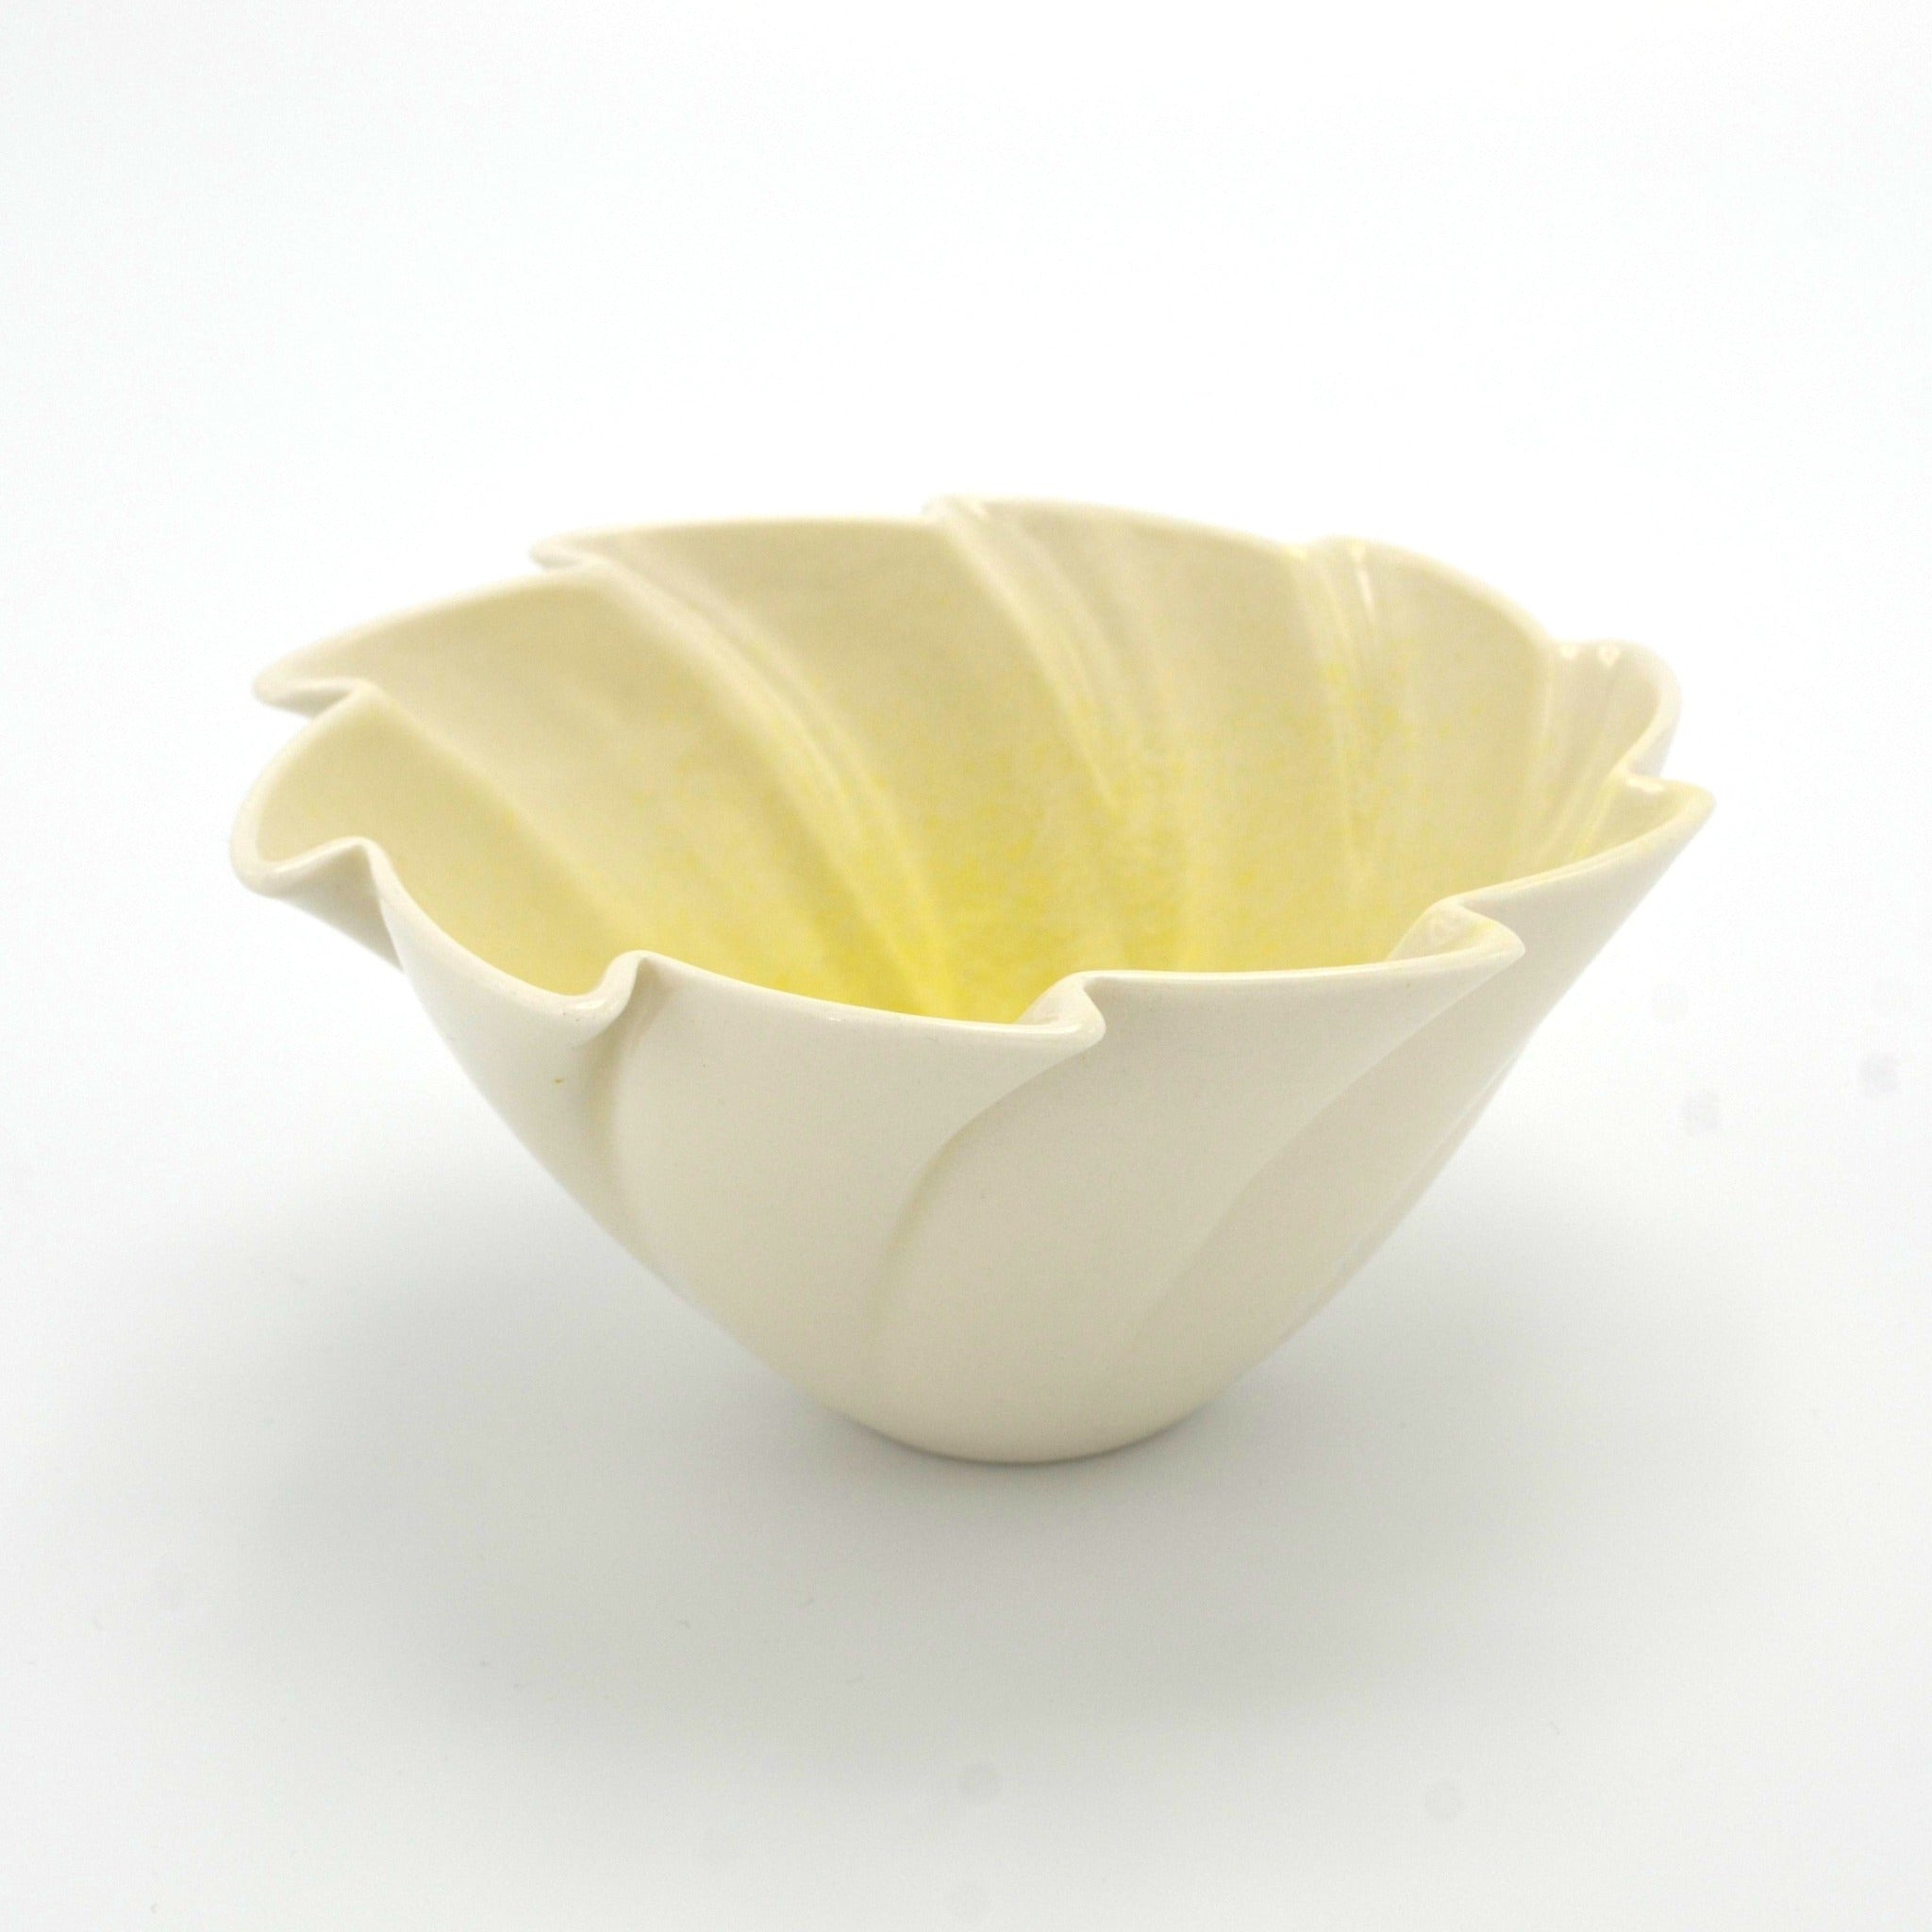 Porcelain bowl "Sunspiral" by Brett Smout